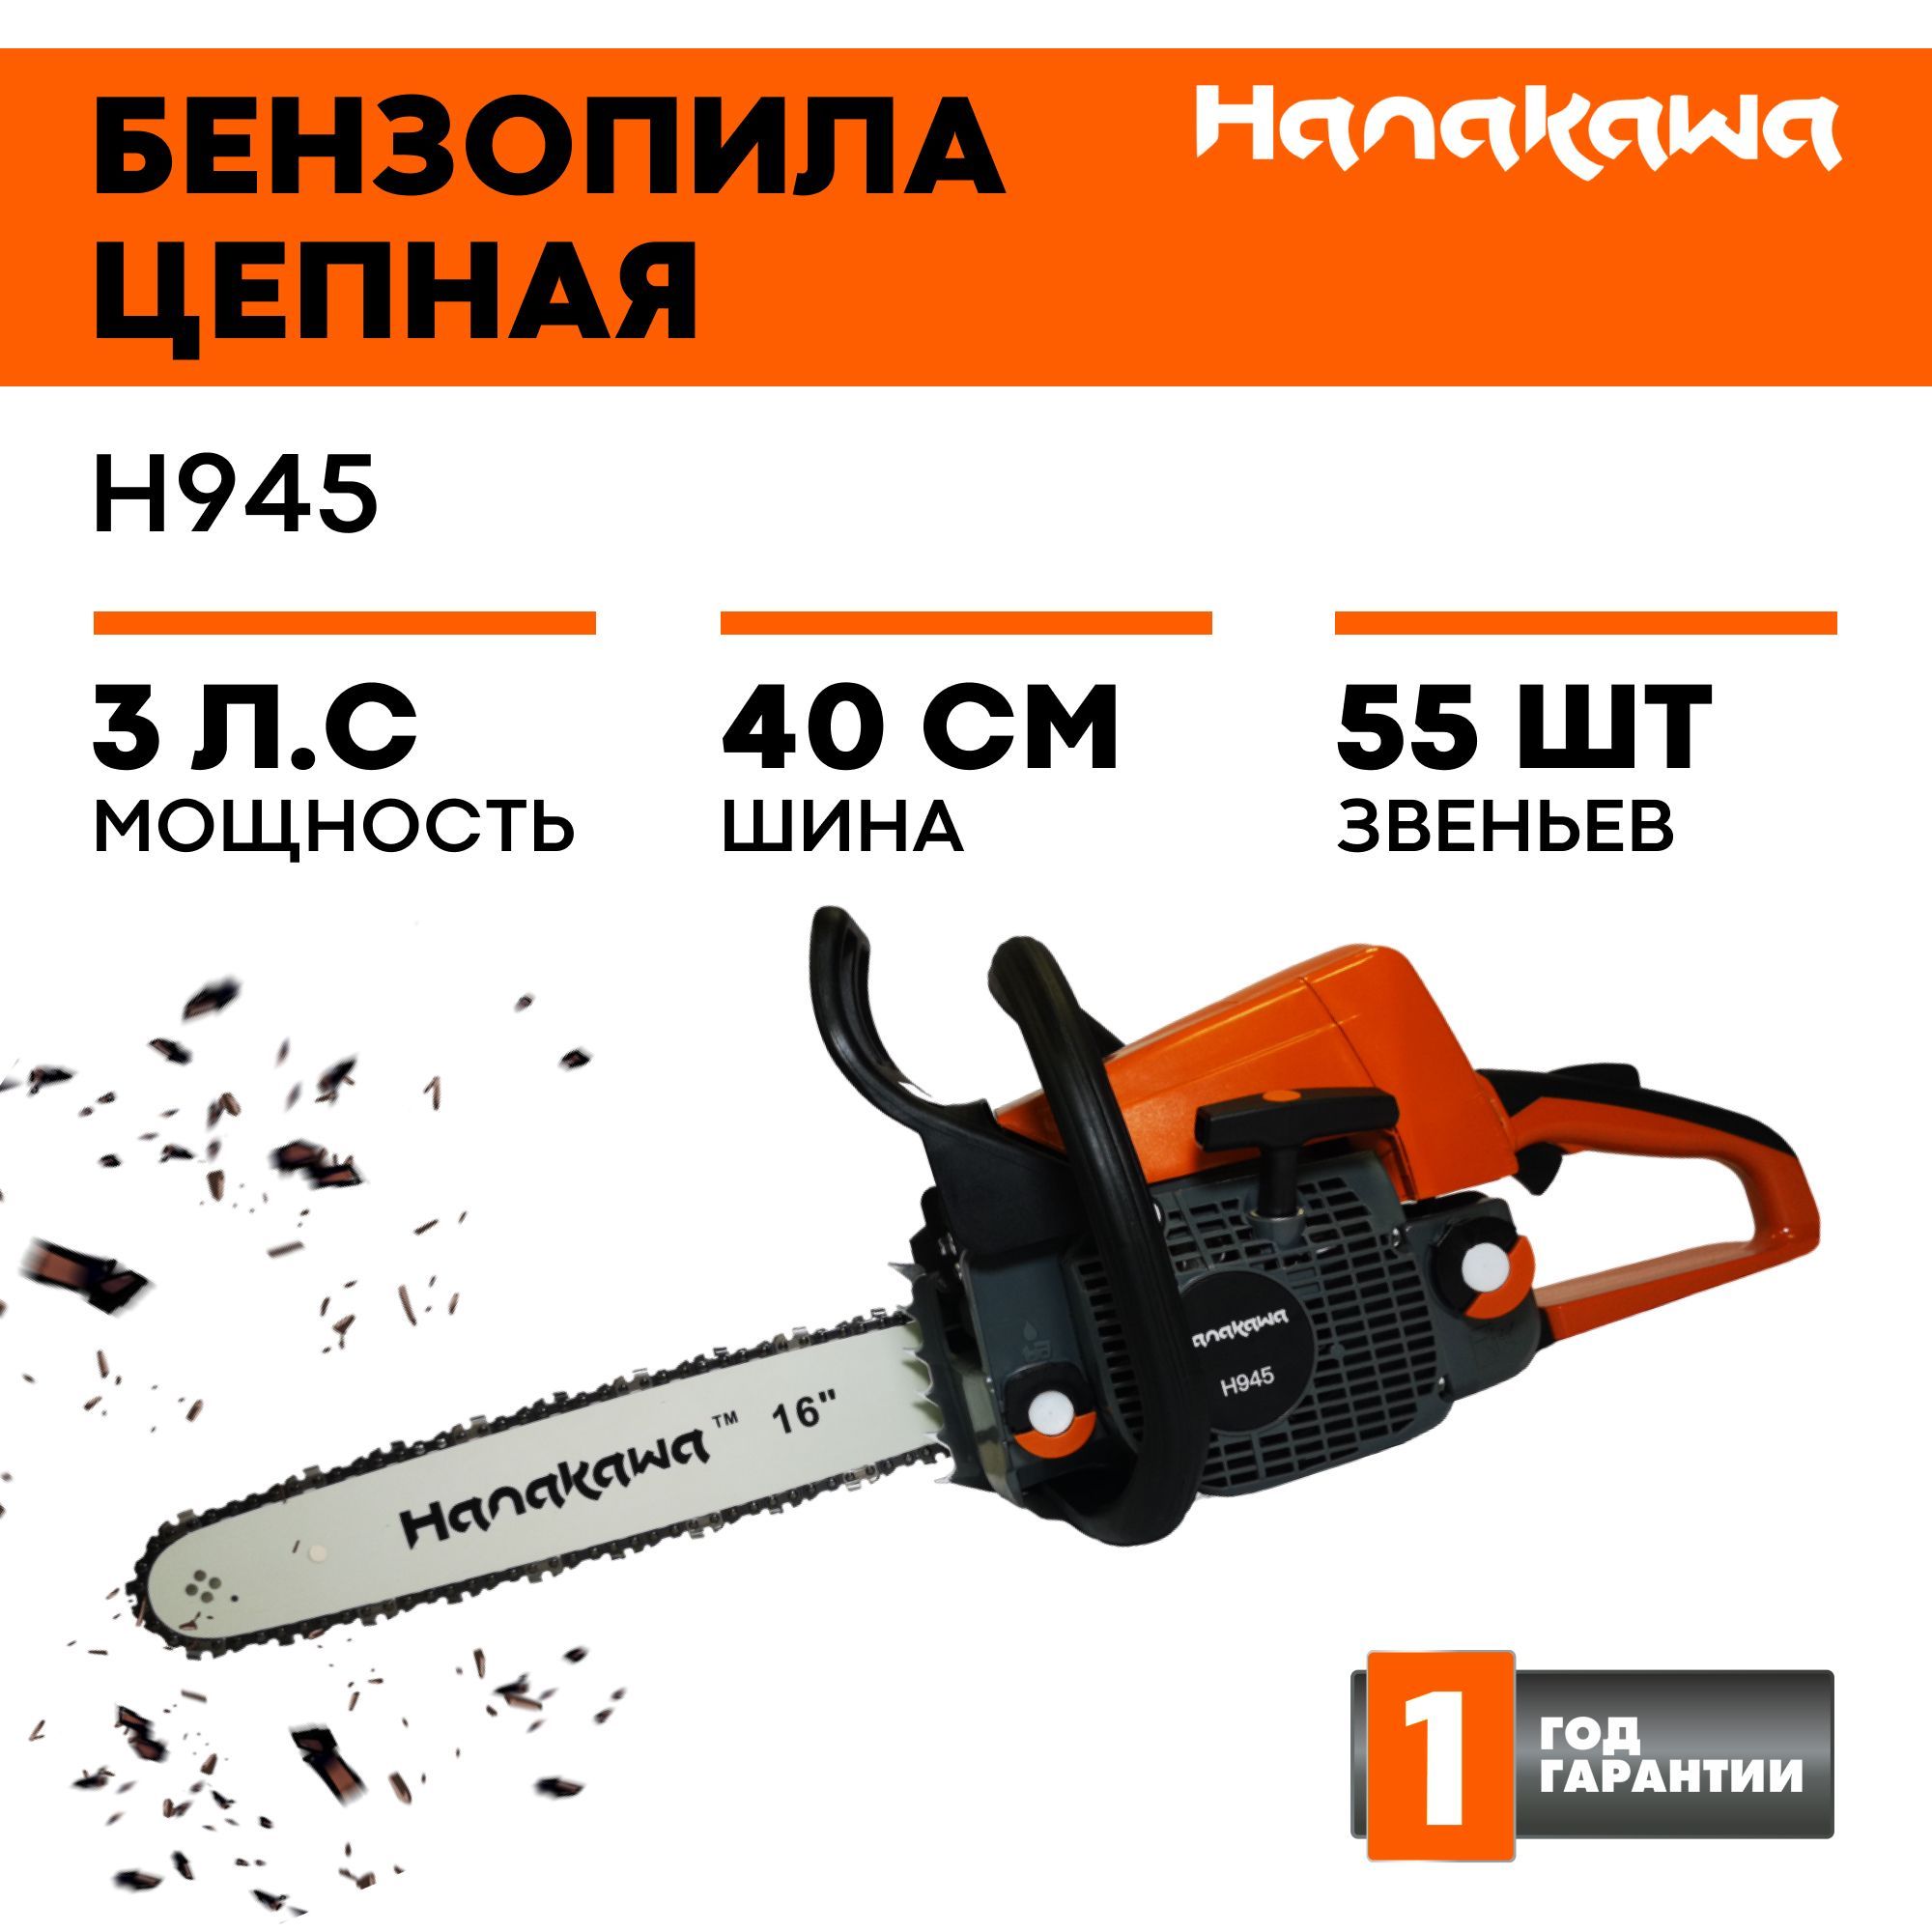 Купить бензопилы по доступной цене | taimyr-expo.ru